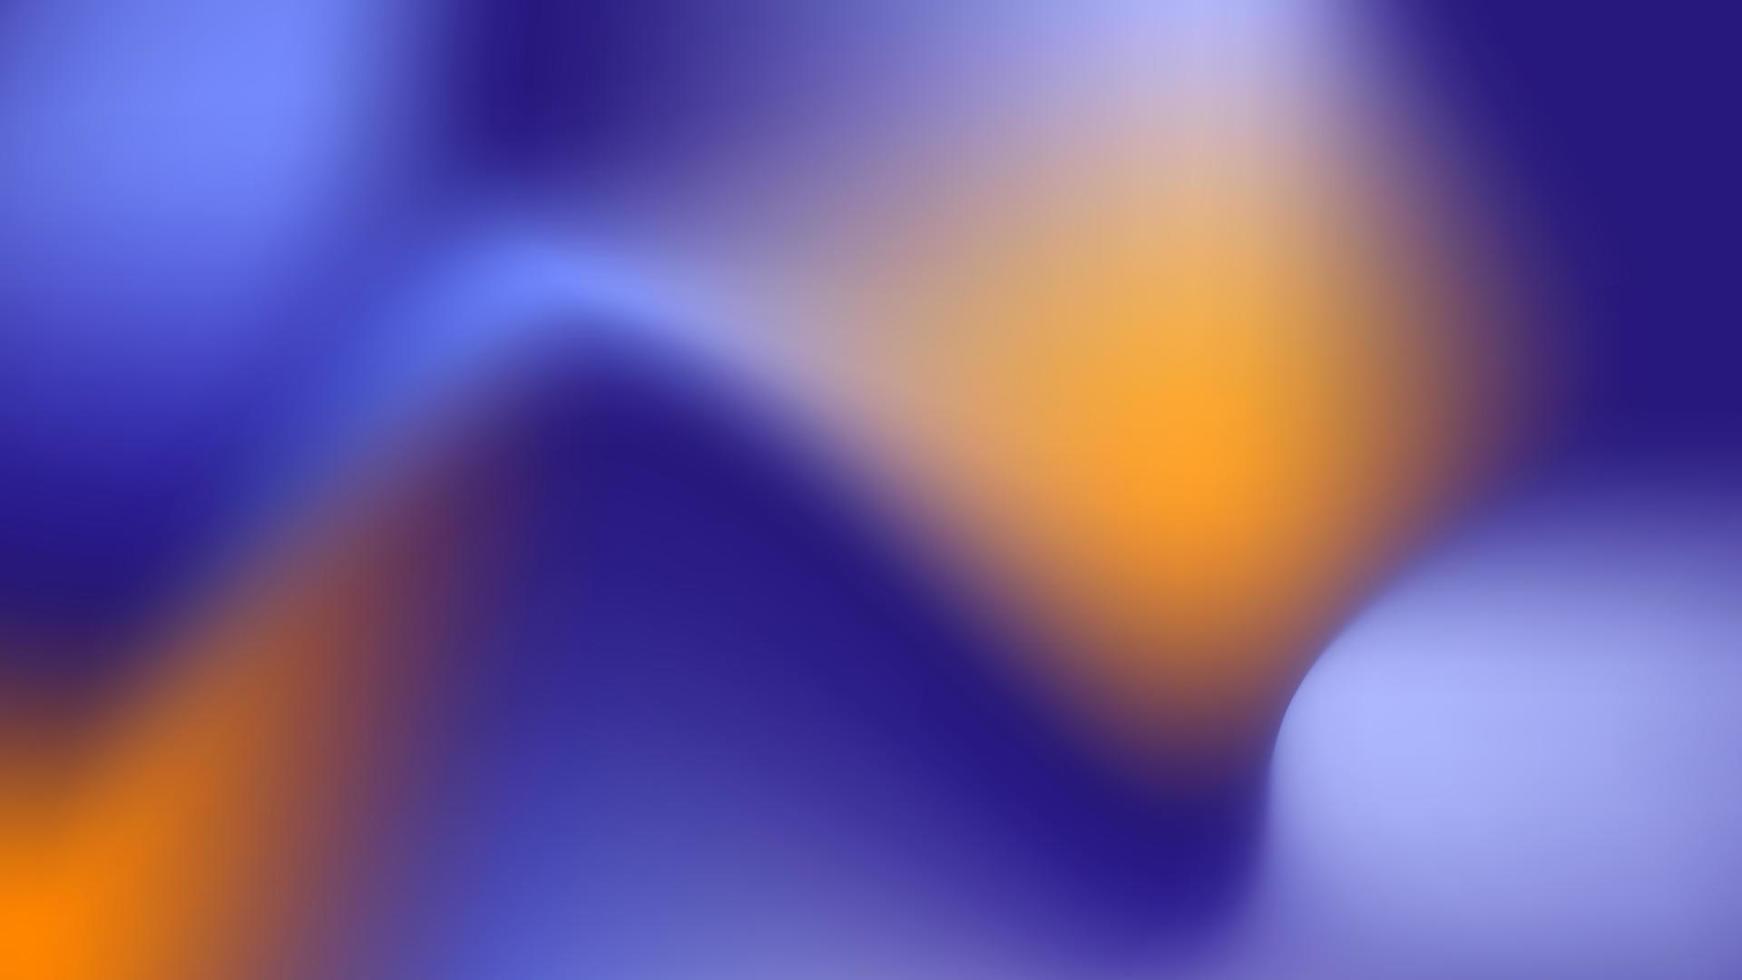 degradado suave, abstracto en colores pastel azul, naranja y azul, fondo degradado, elemento decorativo de textura degradada borrosa, papel tapiz vectorial. vector